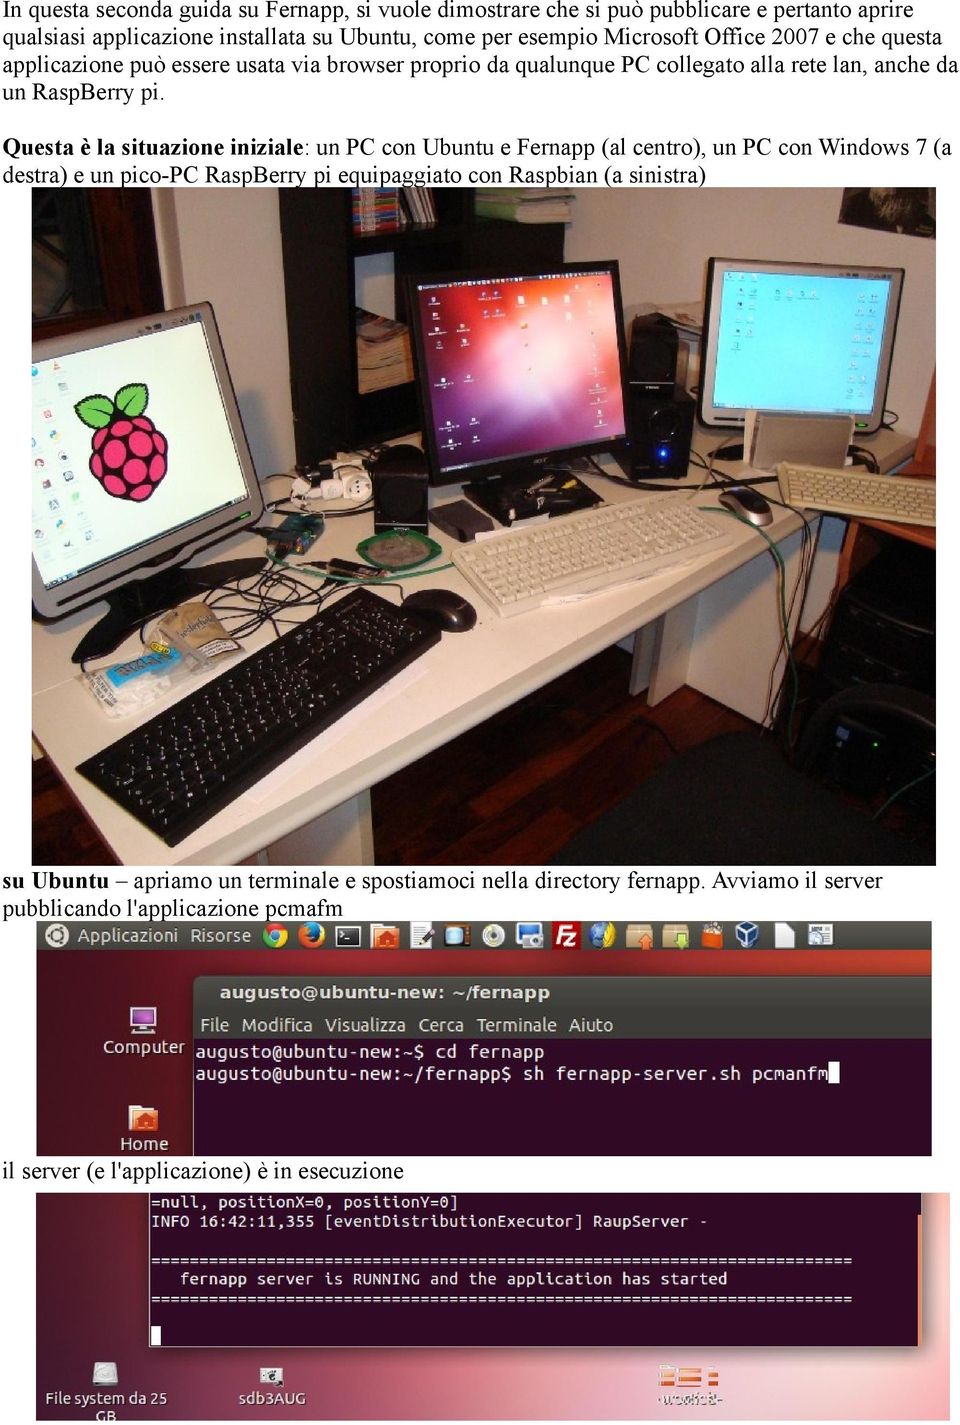 Questa è la situazione iniziale: un PC con Ubuntu e Fernapp (al centro), un PC con Windows 7 (a destra) e un pico-pc RaspBerry pi equipaggiato con Raspbian (a